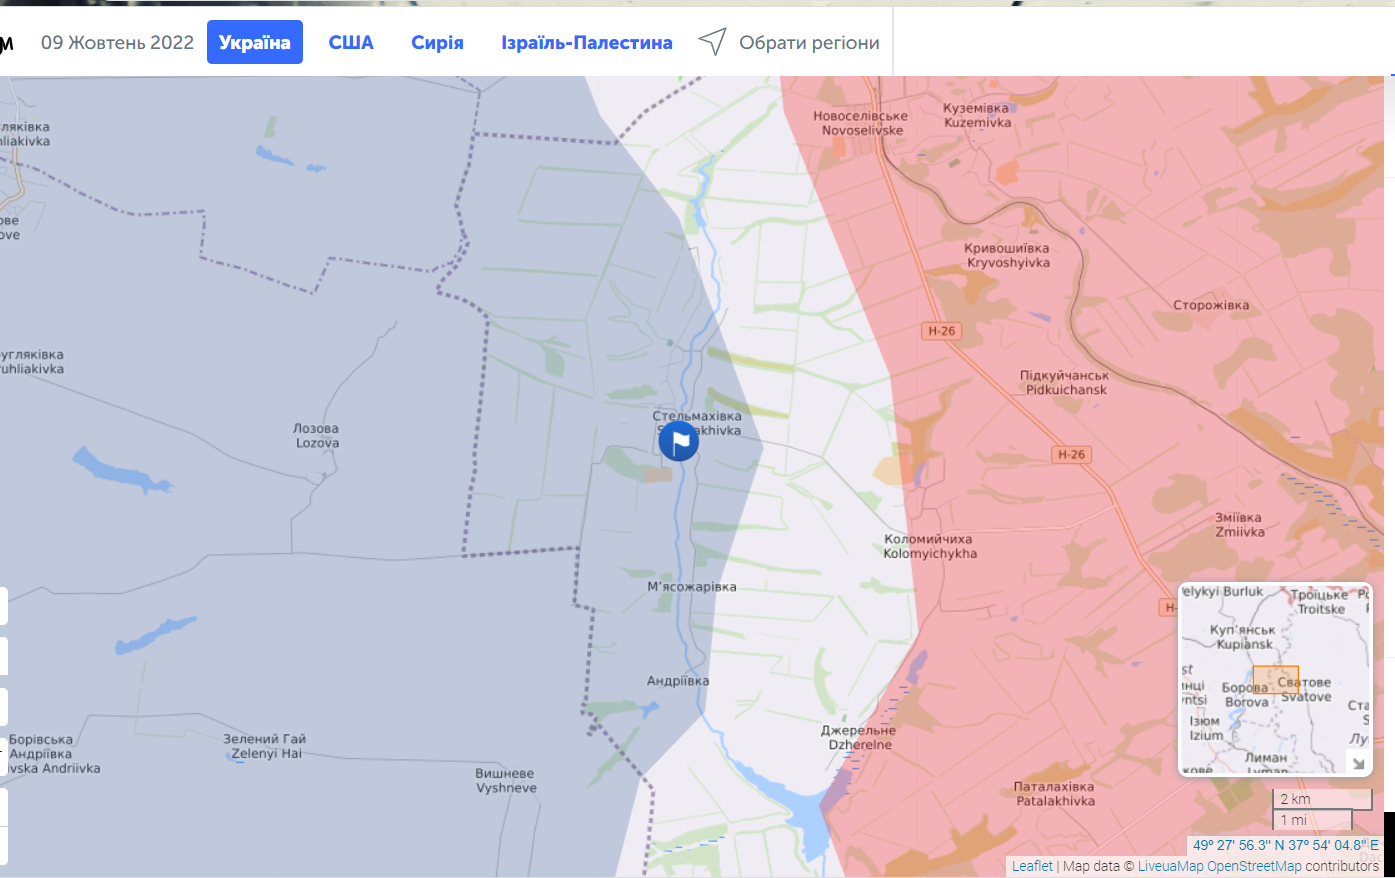 ВСУ освободили Стельмаховку в Луганской области: Гайдай поделился официальной информацией